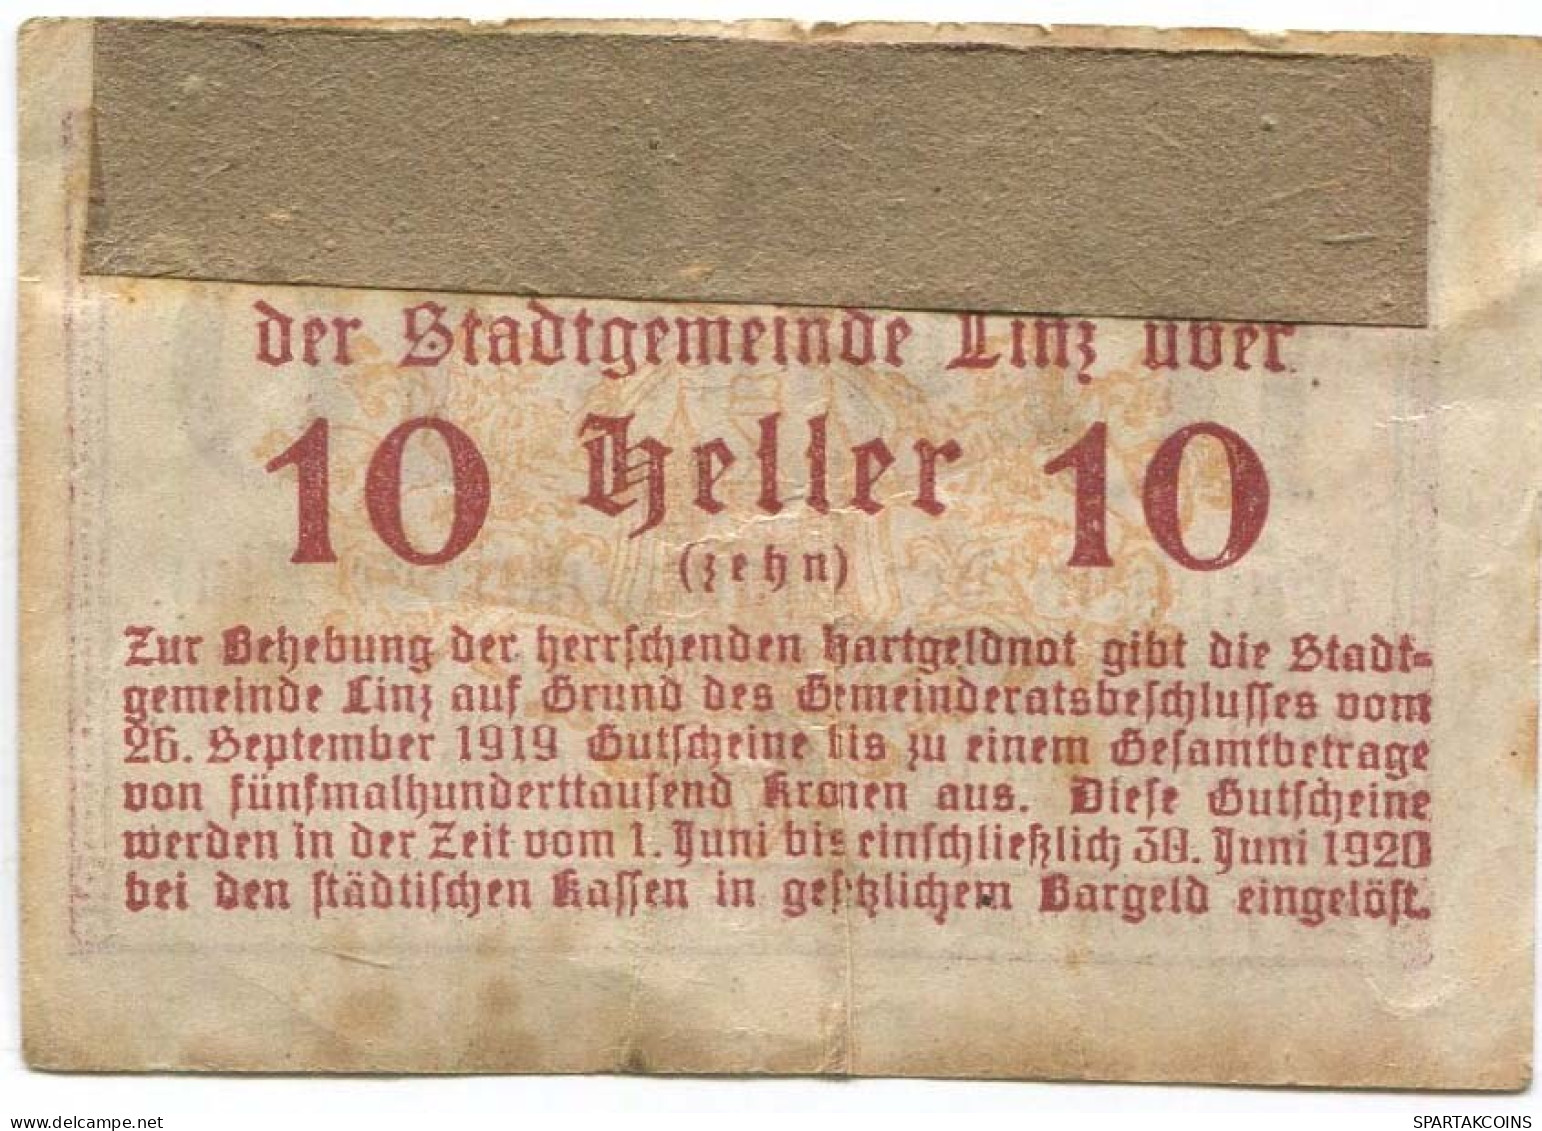 10 HELLER 1919 Stadt LINZ Oberösterreich Österreich Notgeld Papiergeld Banknote #PL730 - [11] Local Banknote Issues